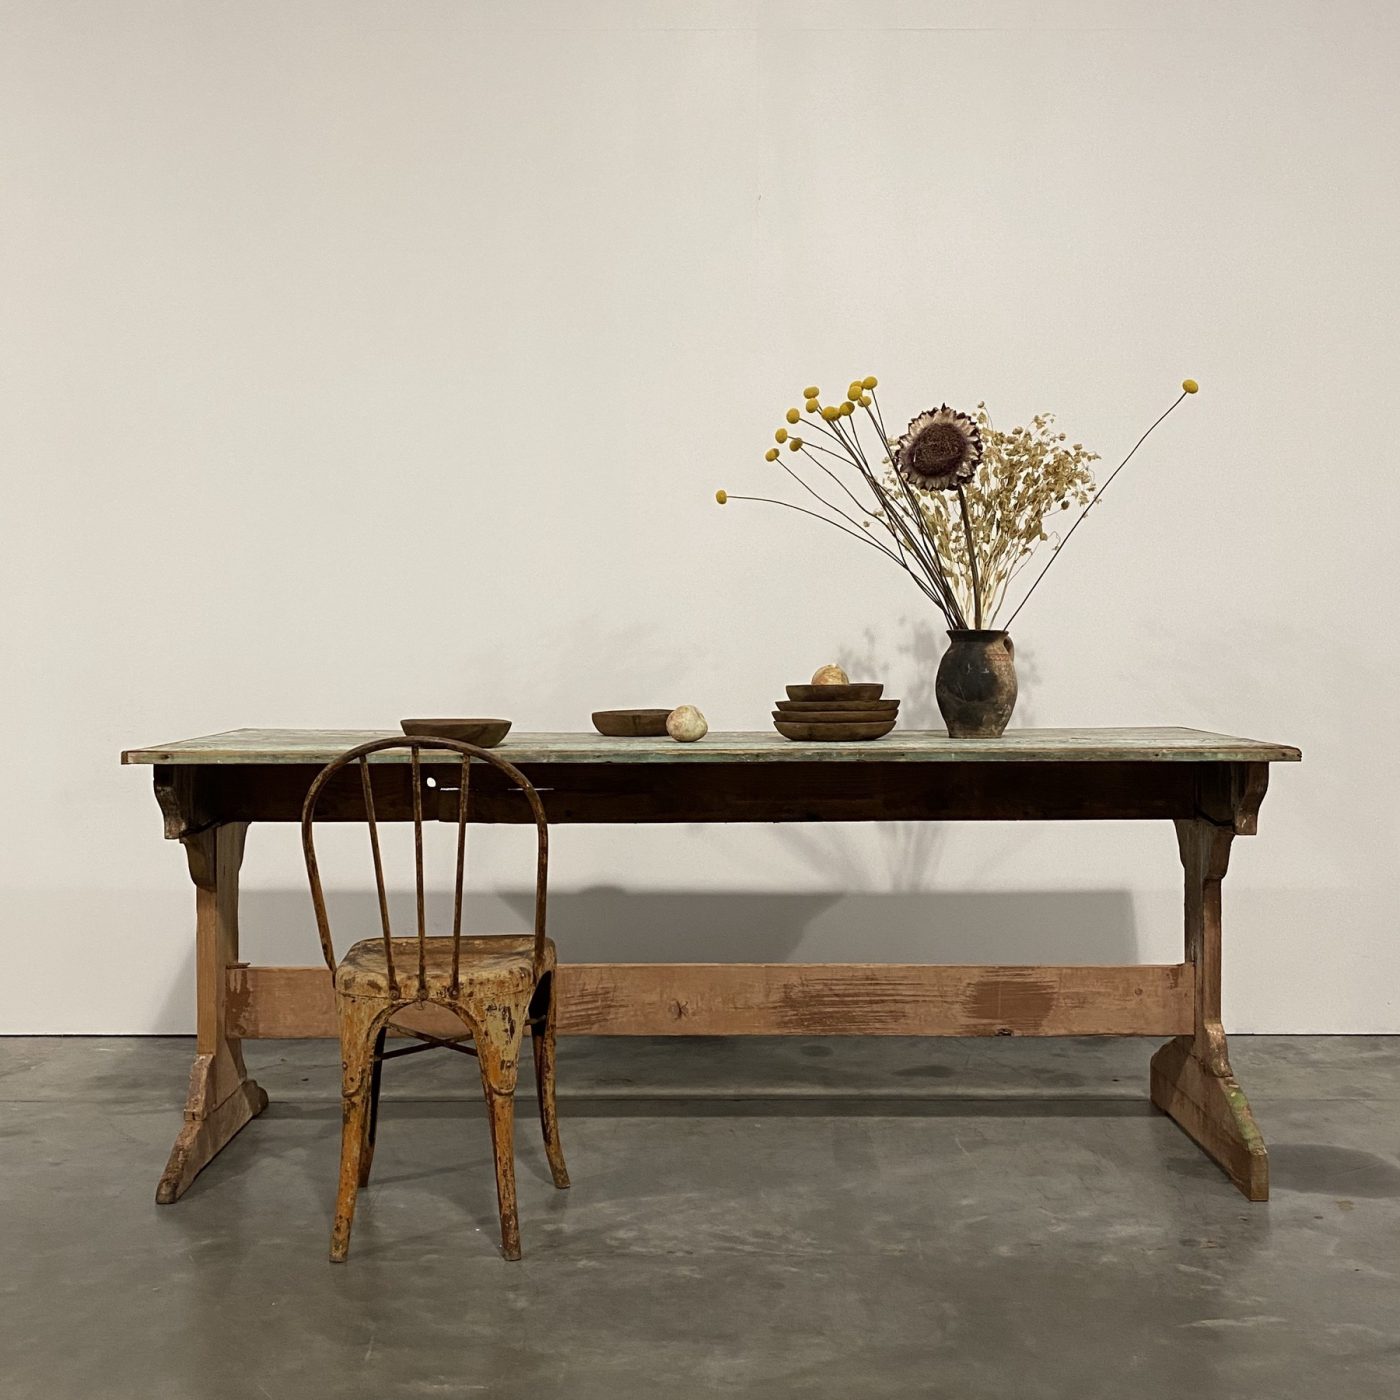 objet-vagabond-painted-table0006